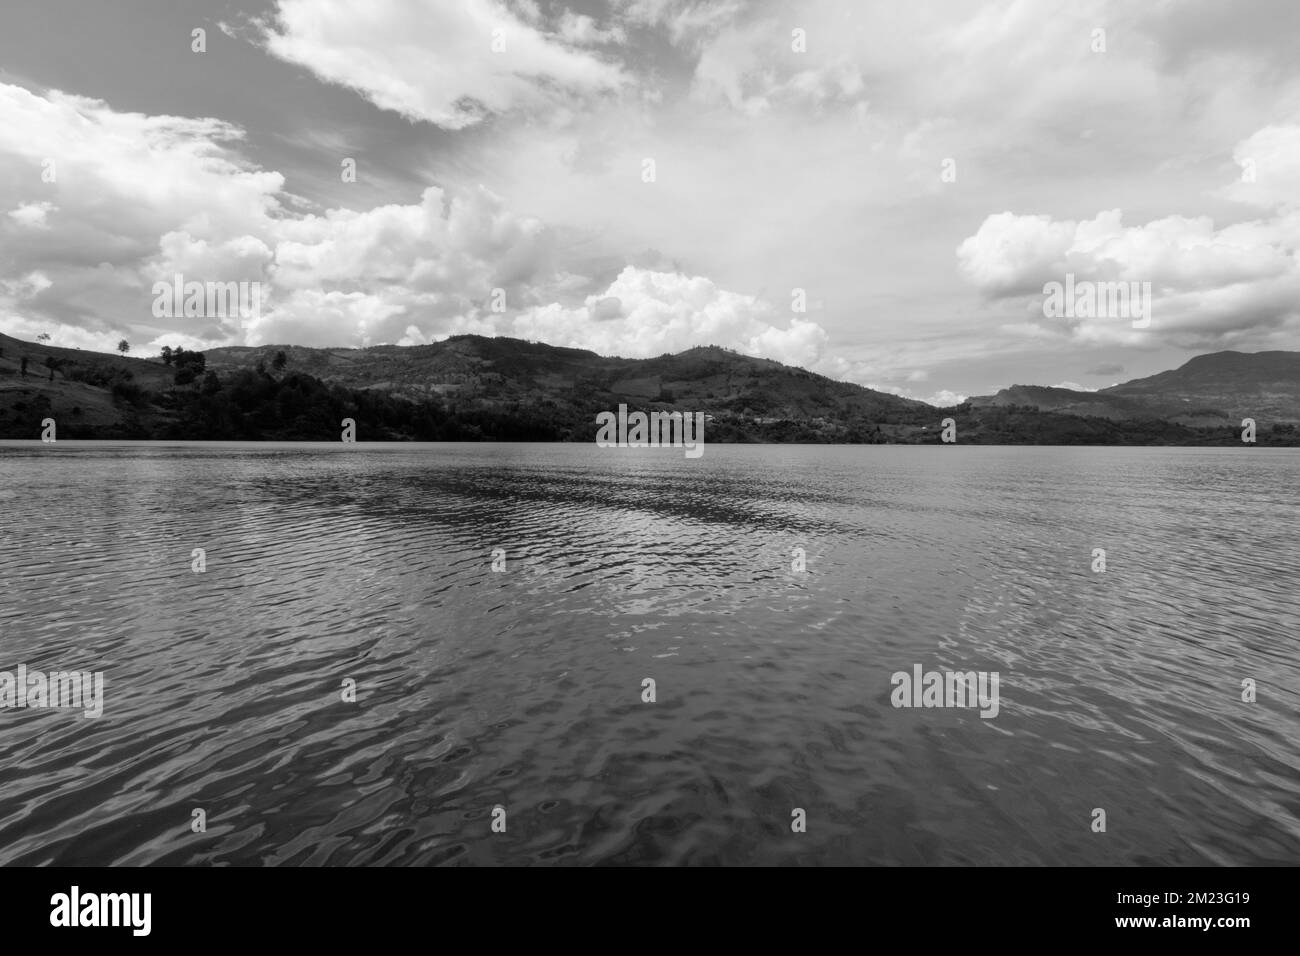 Kolumbianische Guavio-Reservoir-Landschaft mit bewölktem Himmel. Schwarzweißfotografie Stockfoto